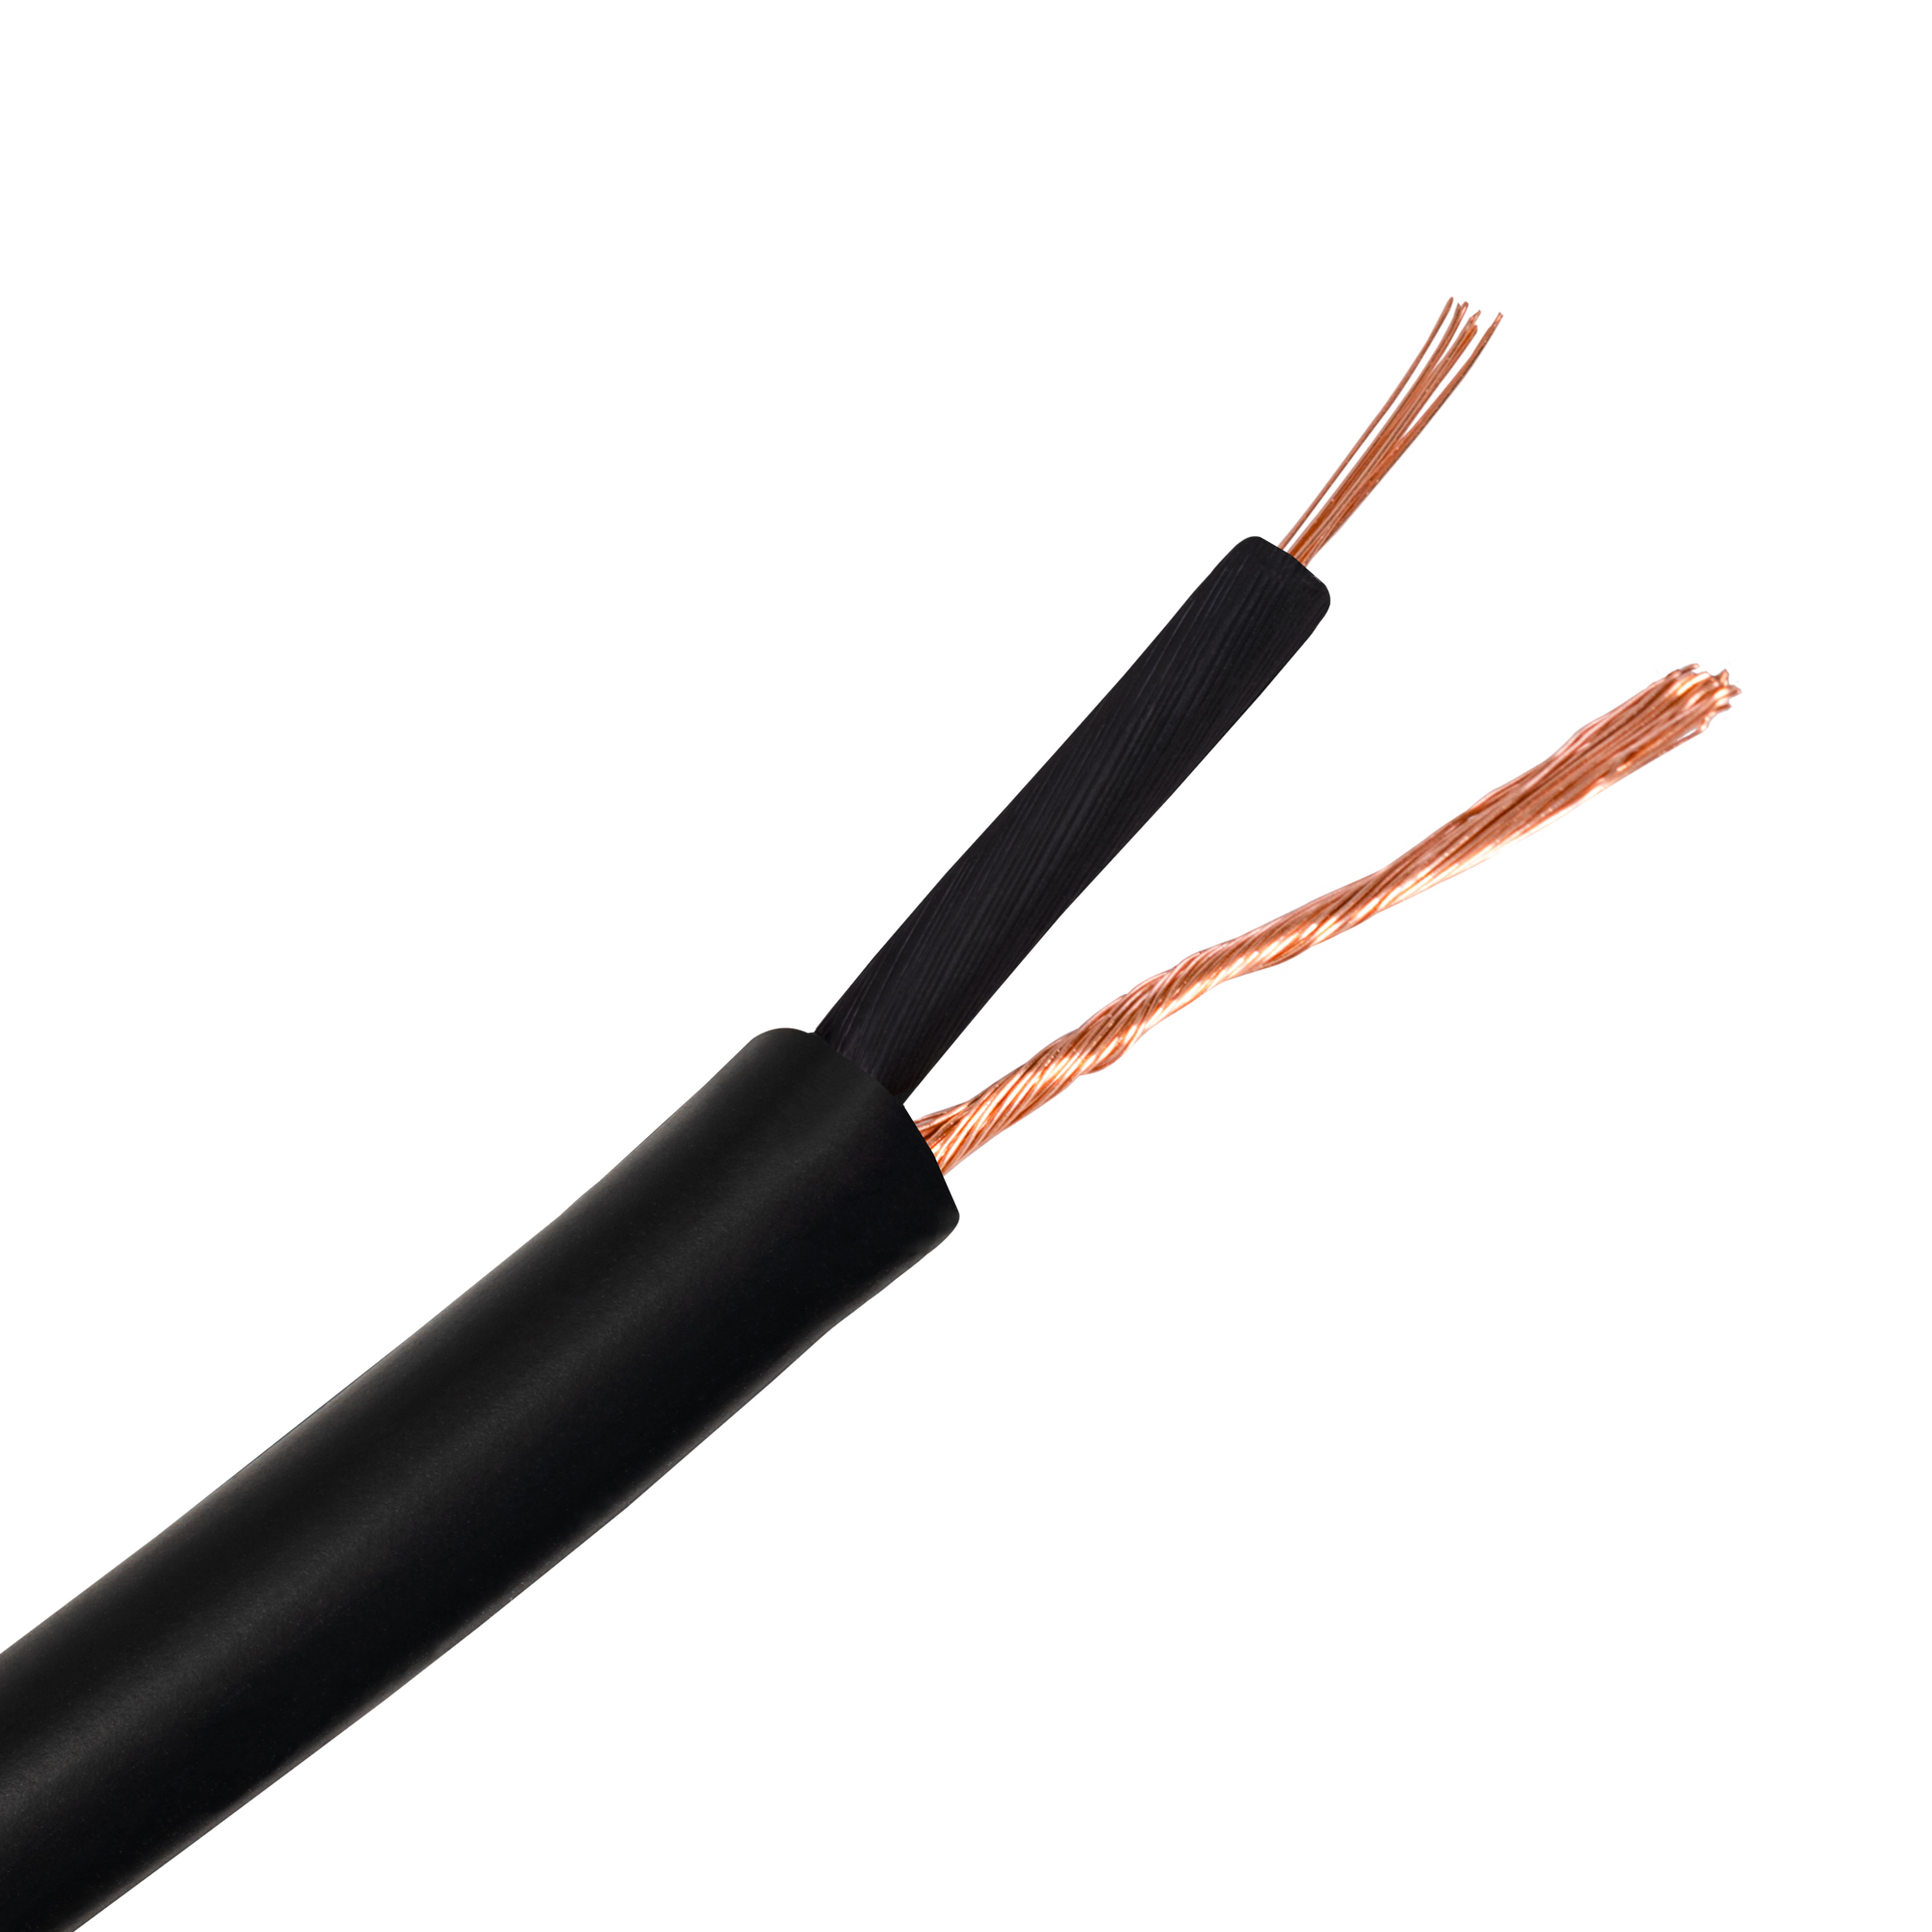 ROCKDALE I001 Инструментальный кабель в бухте для небалансных соединений, OFC, 64x0,12+20x0,12 купить в prostore.me